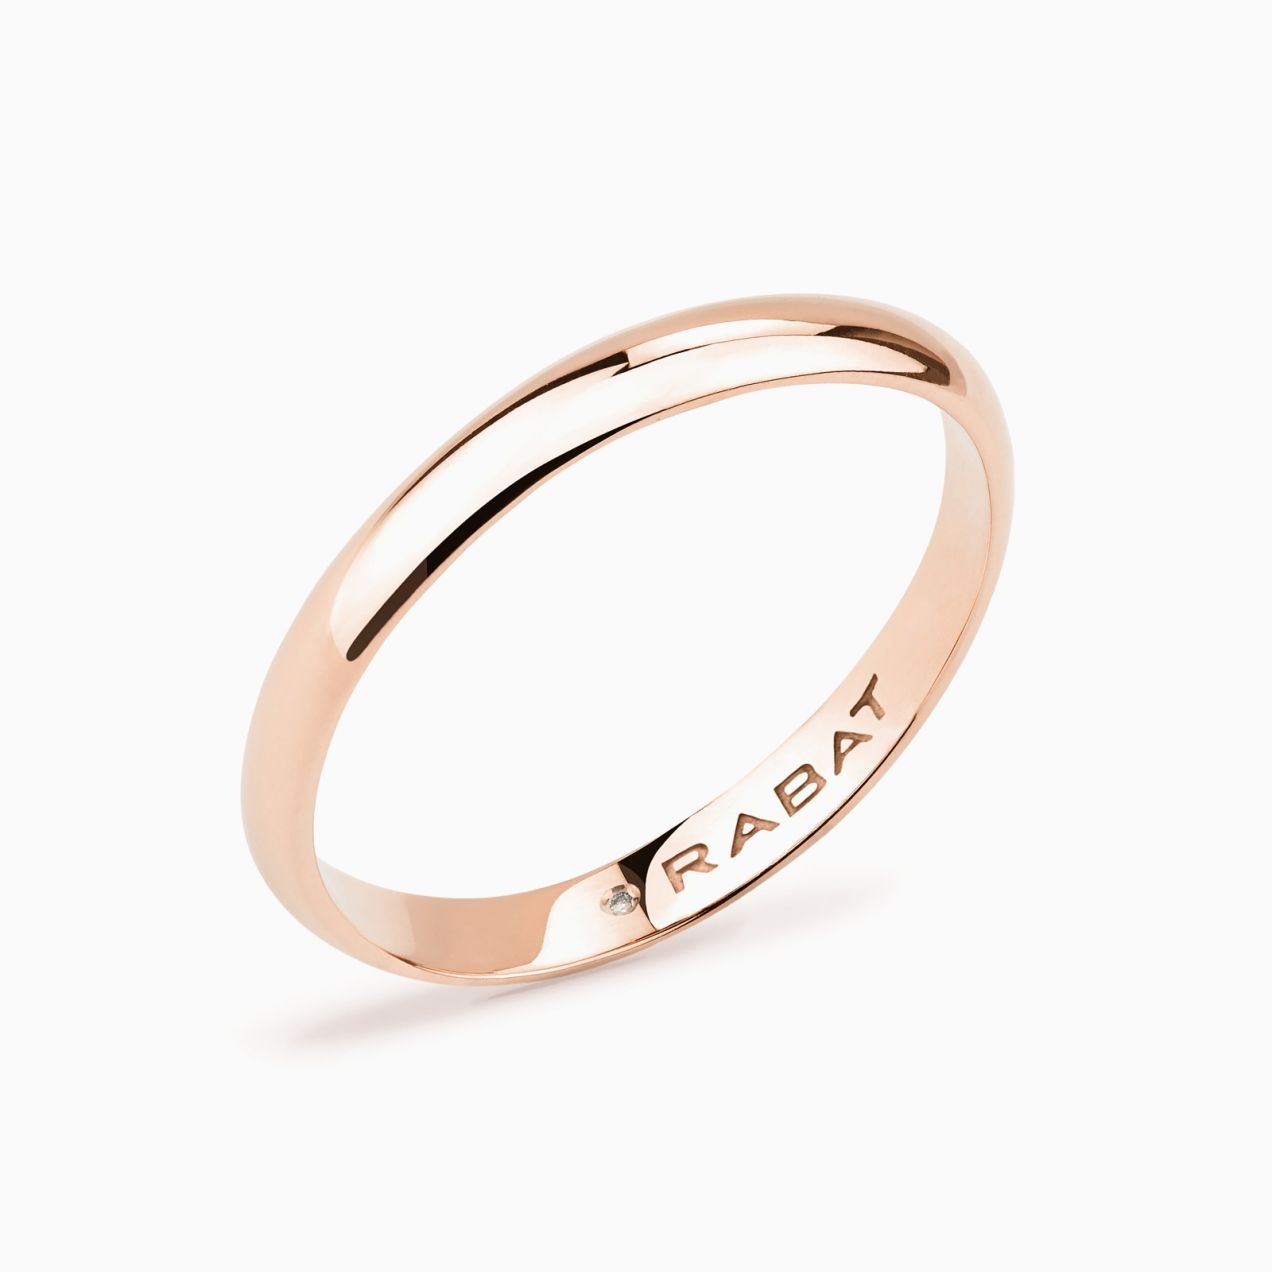 Rose gold half-round wedding ring